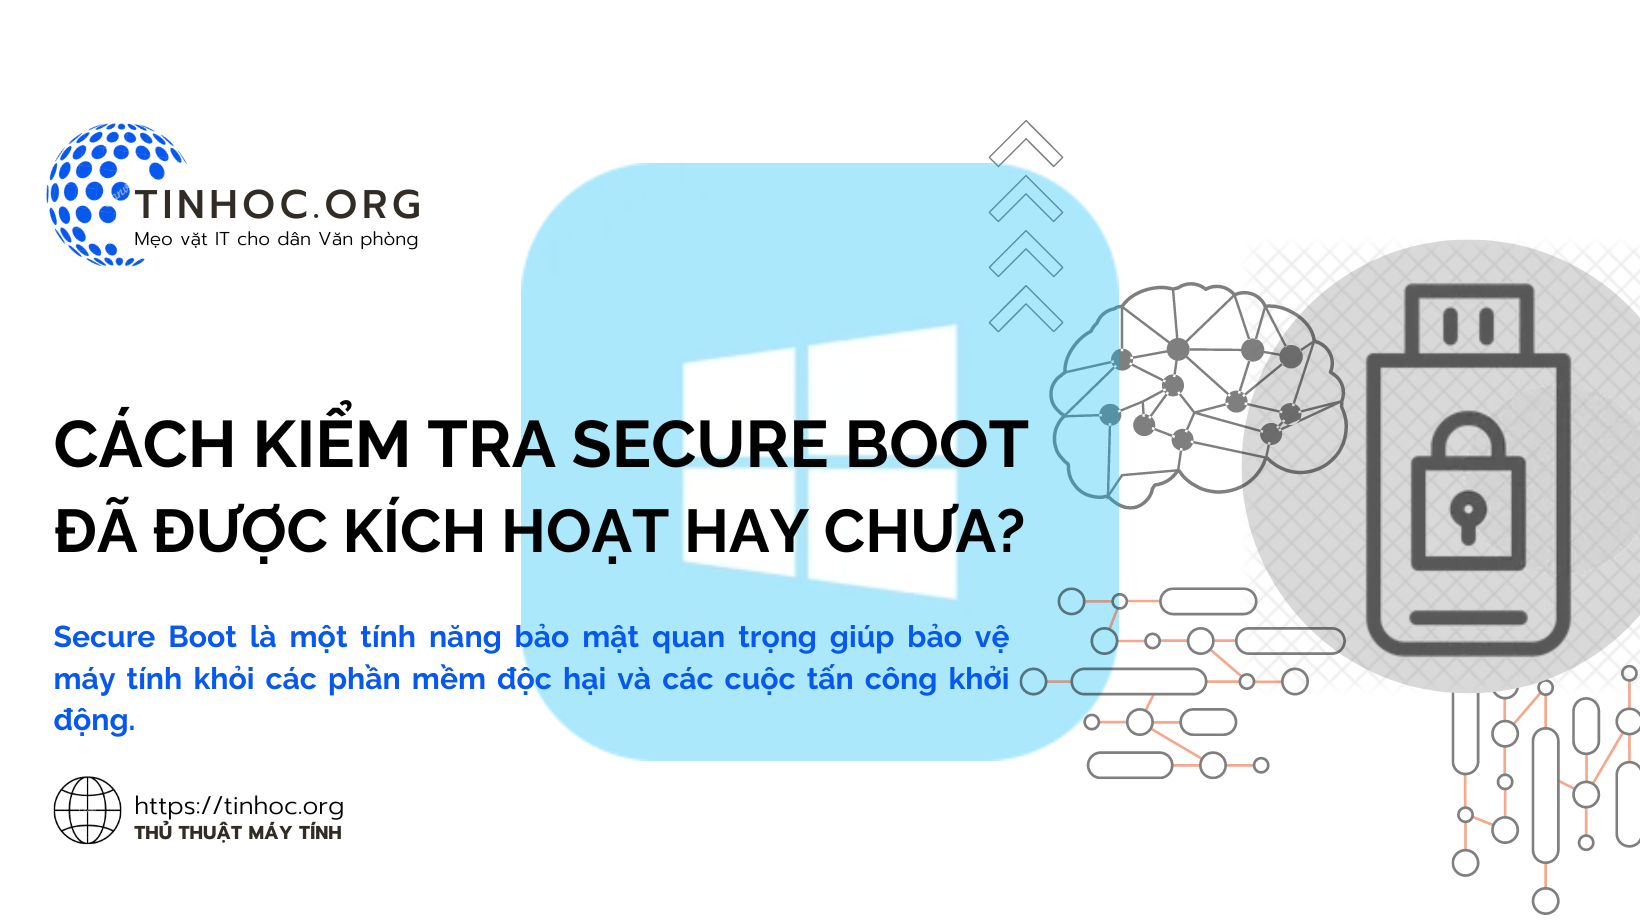 Cách kiểm tra Secure Boot đã được kích hoạt hay chưa?